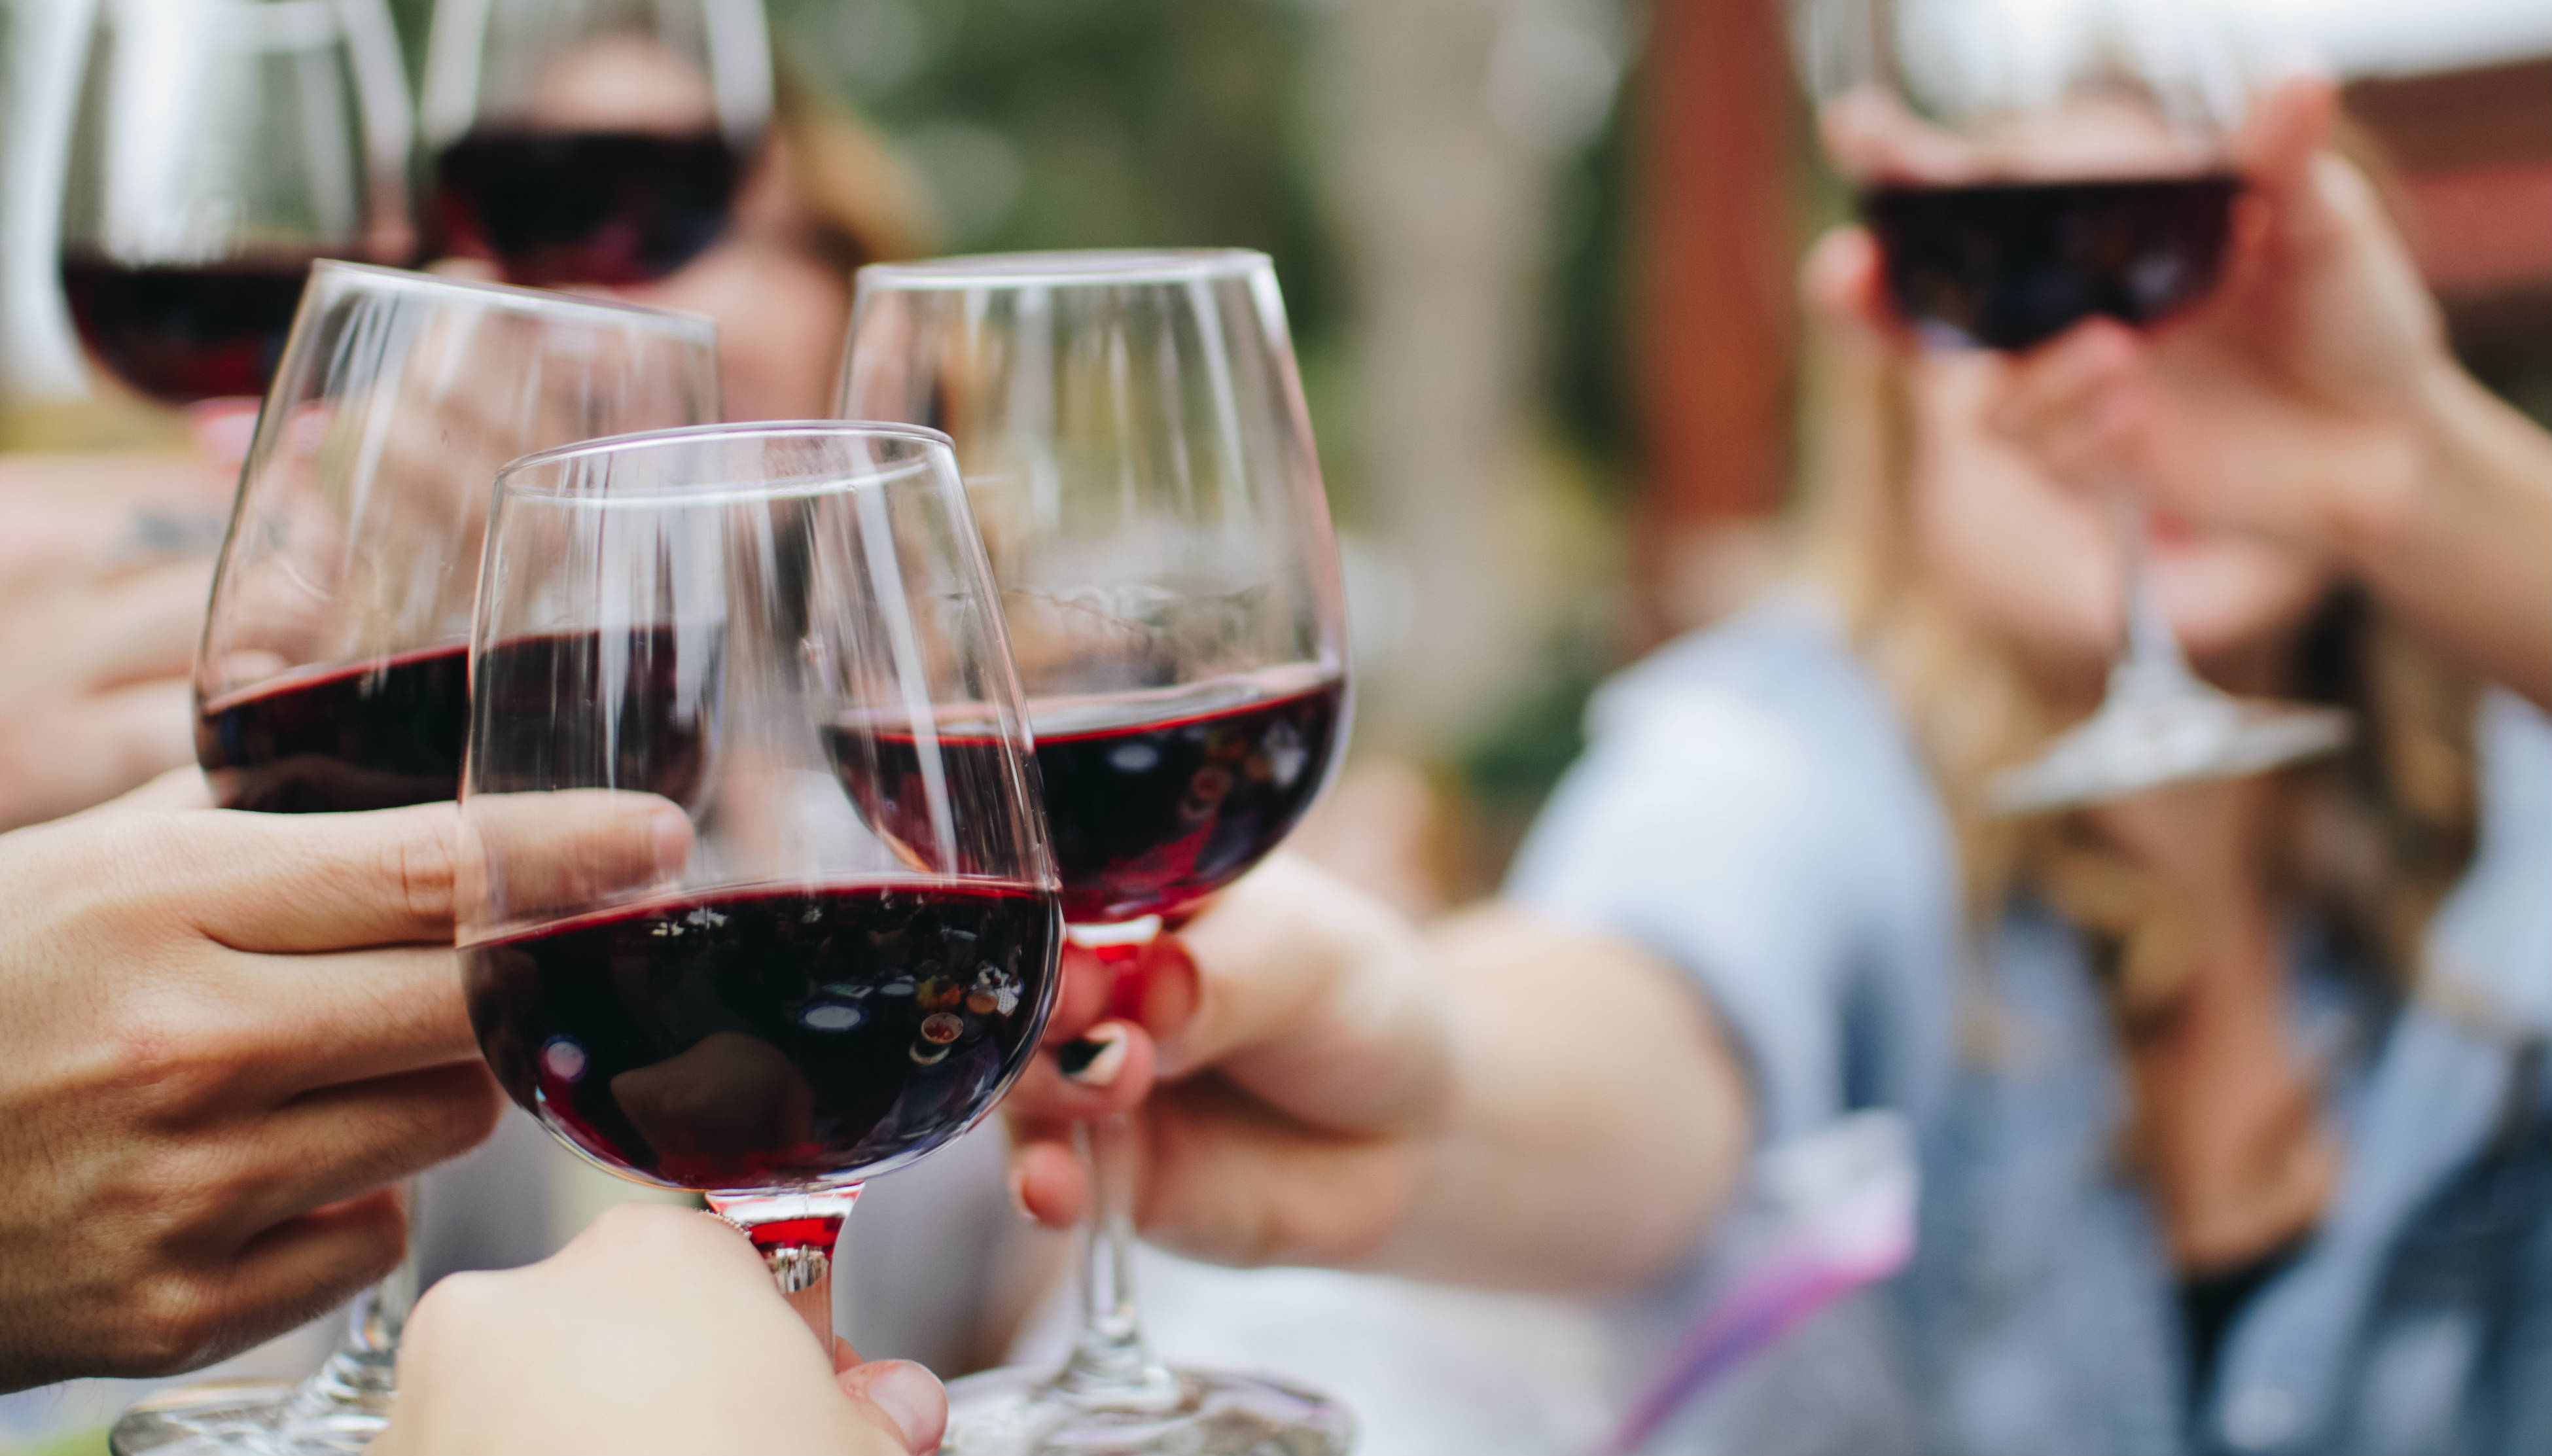 El consumo de vino está normalizado en nuestra sociedad. Foto: Kelsey Knight
